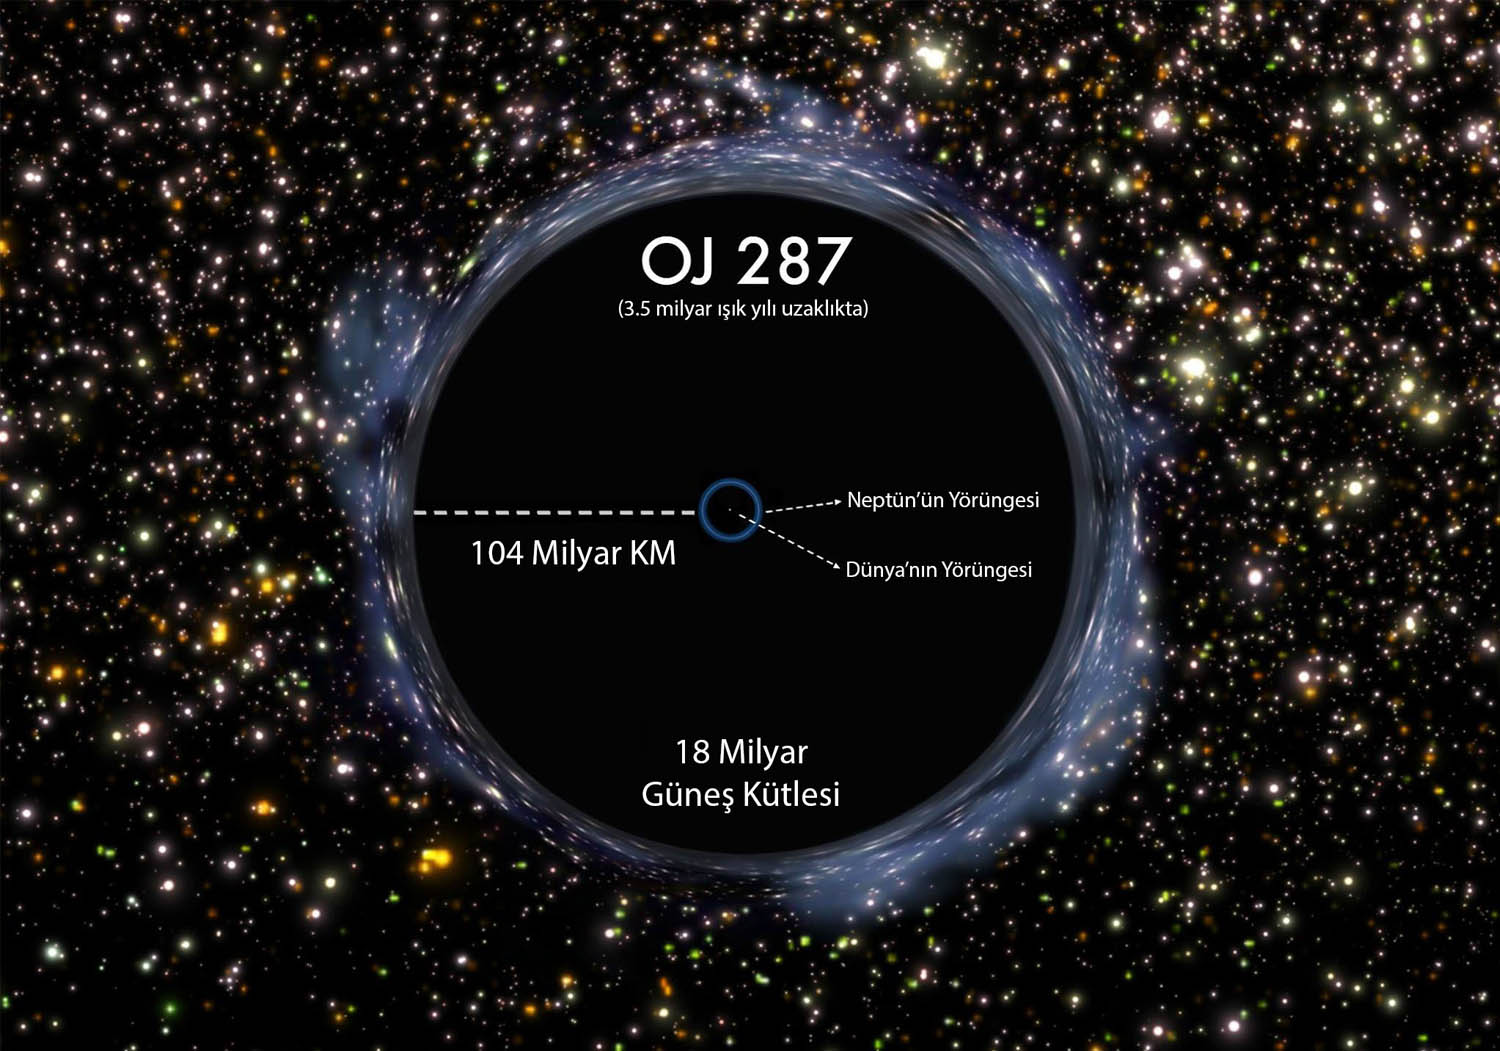 OJ 287 isimli karadelik, 18 milyar güneş kütlesi ile şu ana kadar keşfedilmiş en büyük karadeliktir.